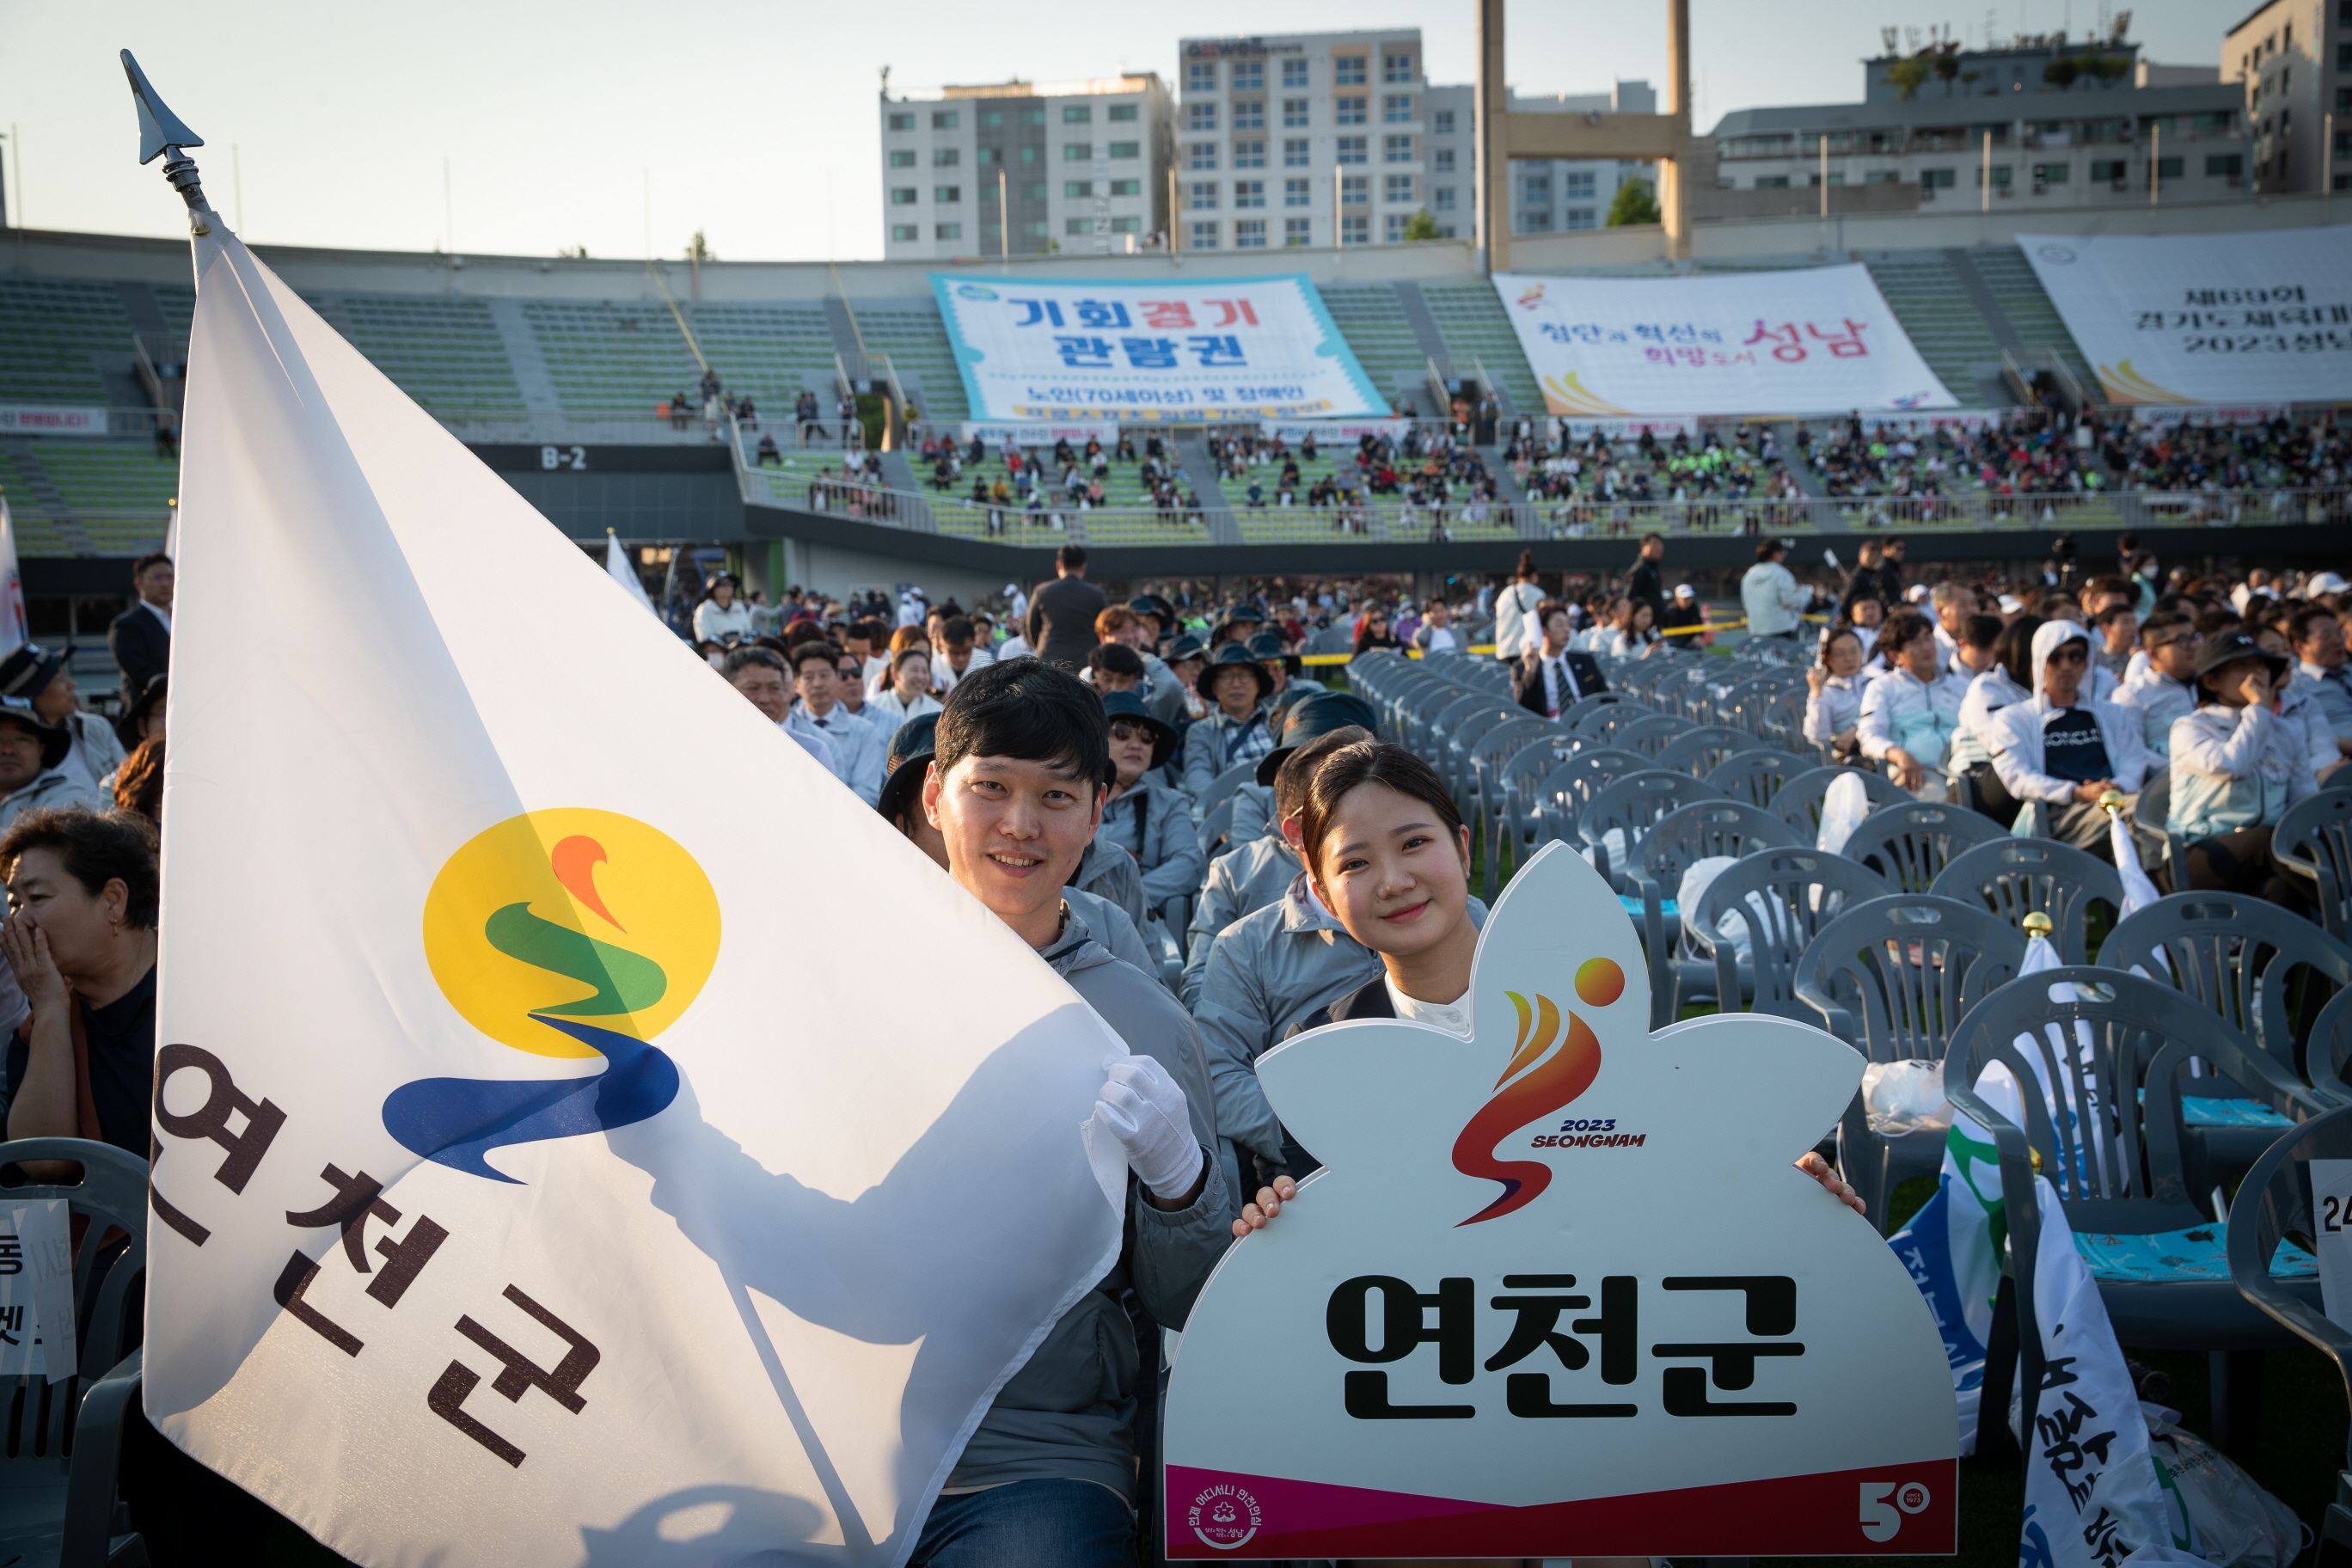 [23. 5. 11.] 경기도 체육대회 성남시 개최 이미지 2 - 본문에 자세한설명을 제공합니다.